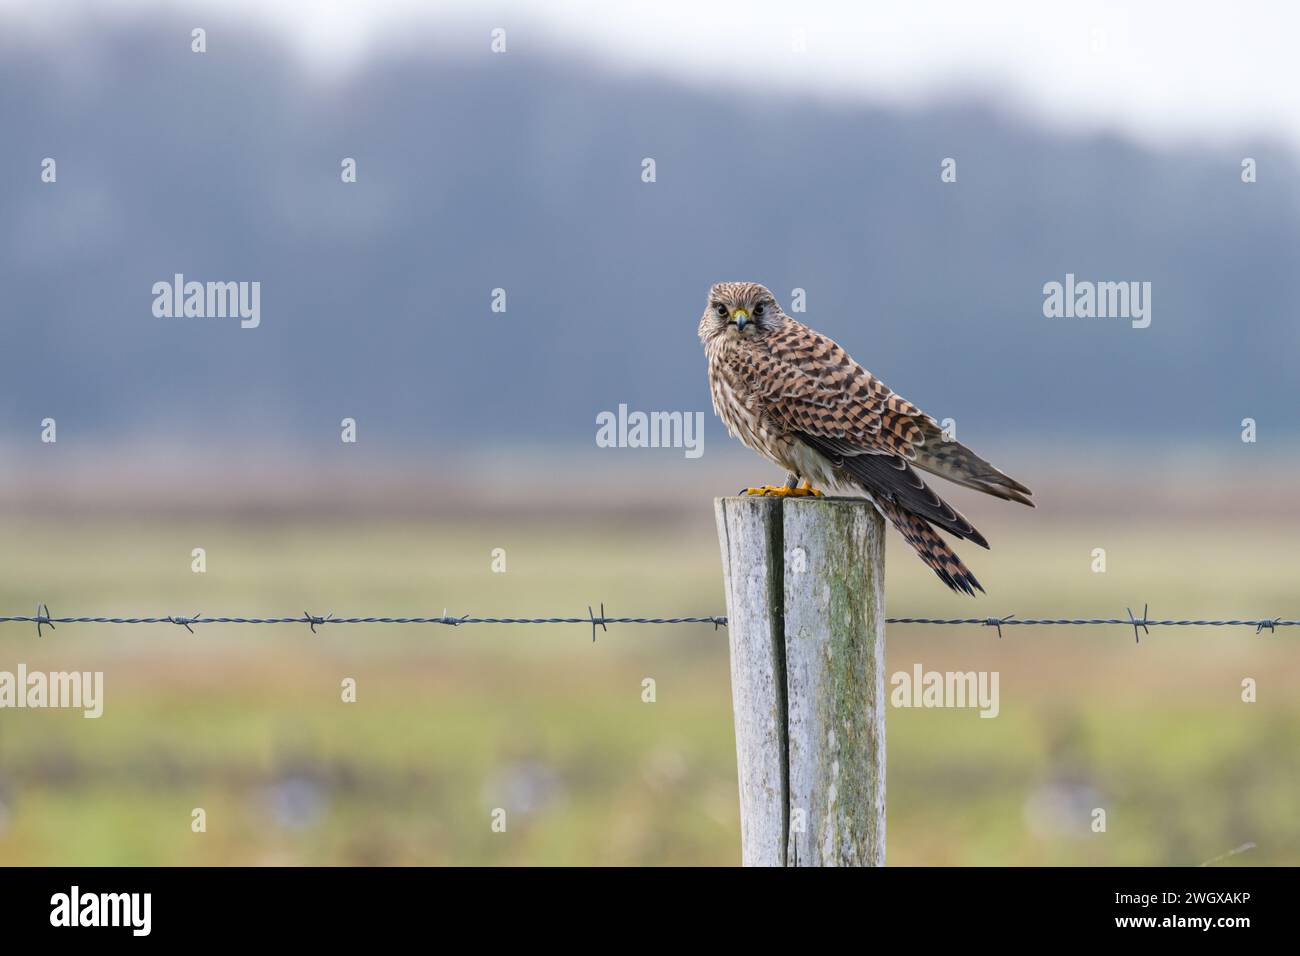 Ein junger Falke (falco tinnunkulus) steht auf einem hölzernen Zaunpfosten mit Stacheldraht auf einem Feld. Stockfoto